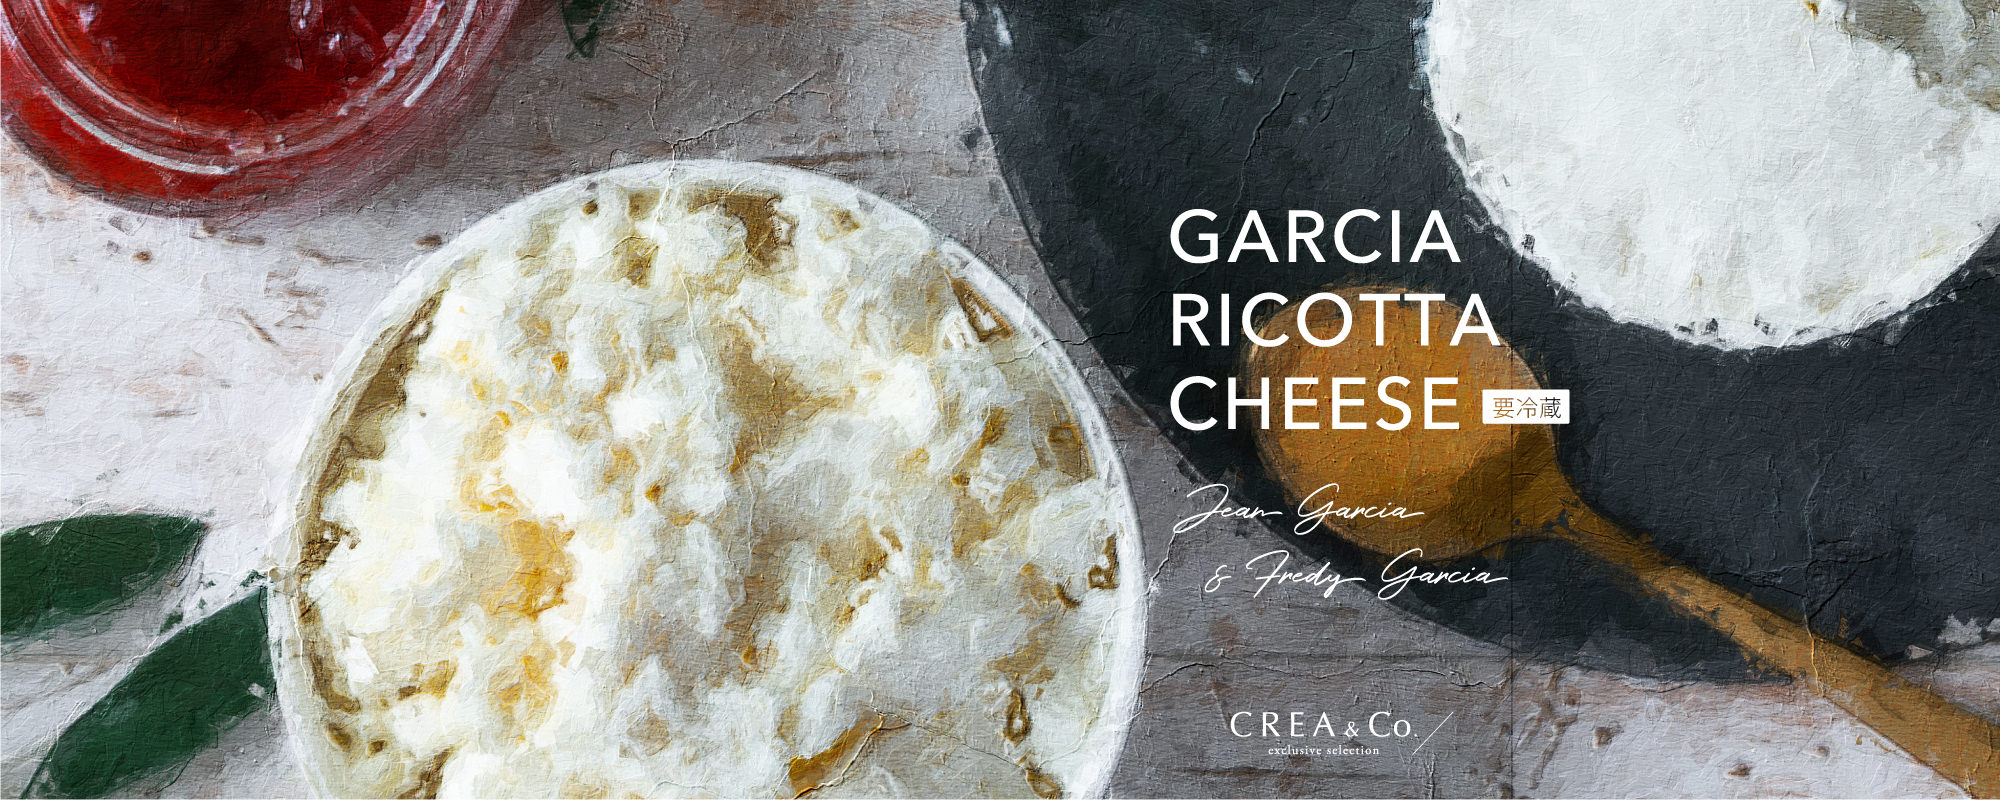 ガルシア リコッタチーズ 150g × 2個